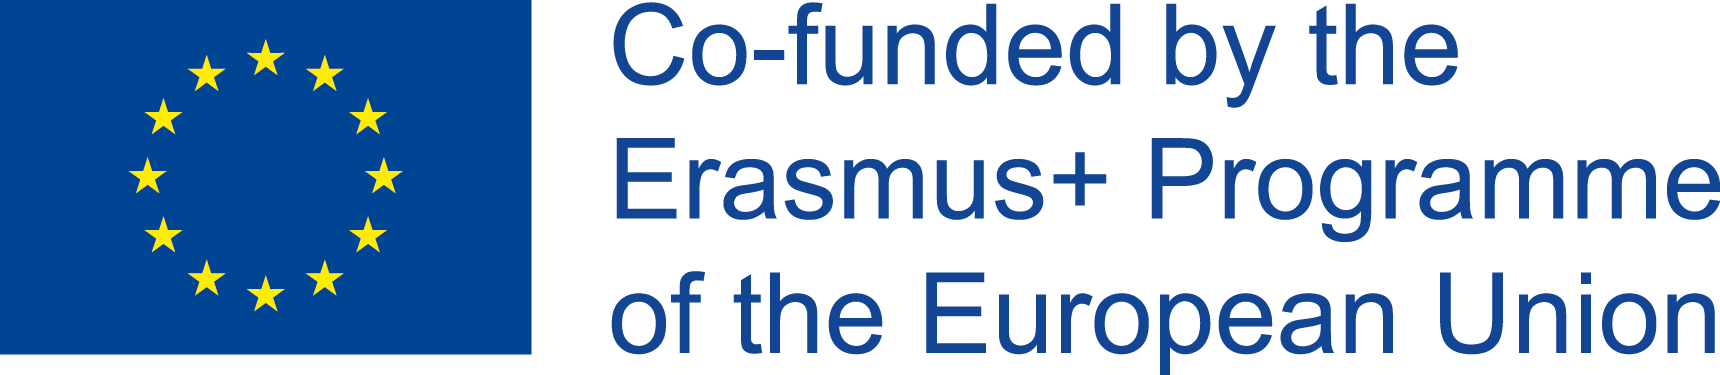 This image shows the EU logo and states "ERASMUS Programme of the European Union"